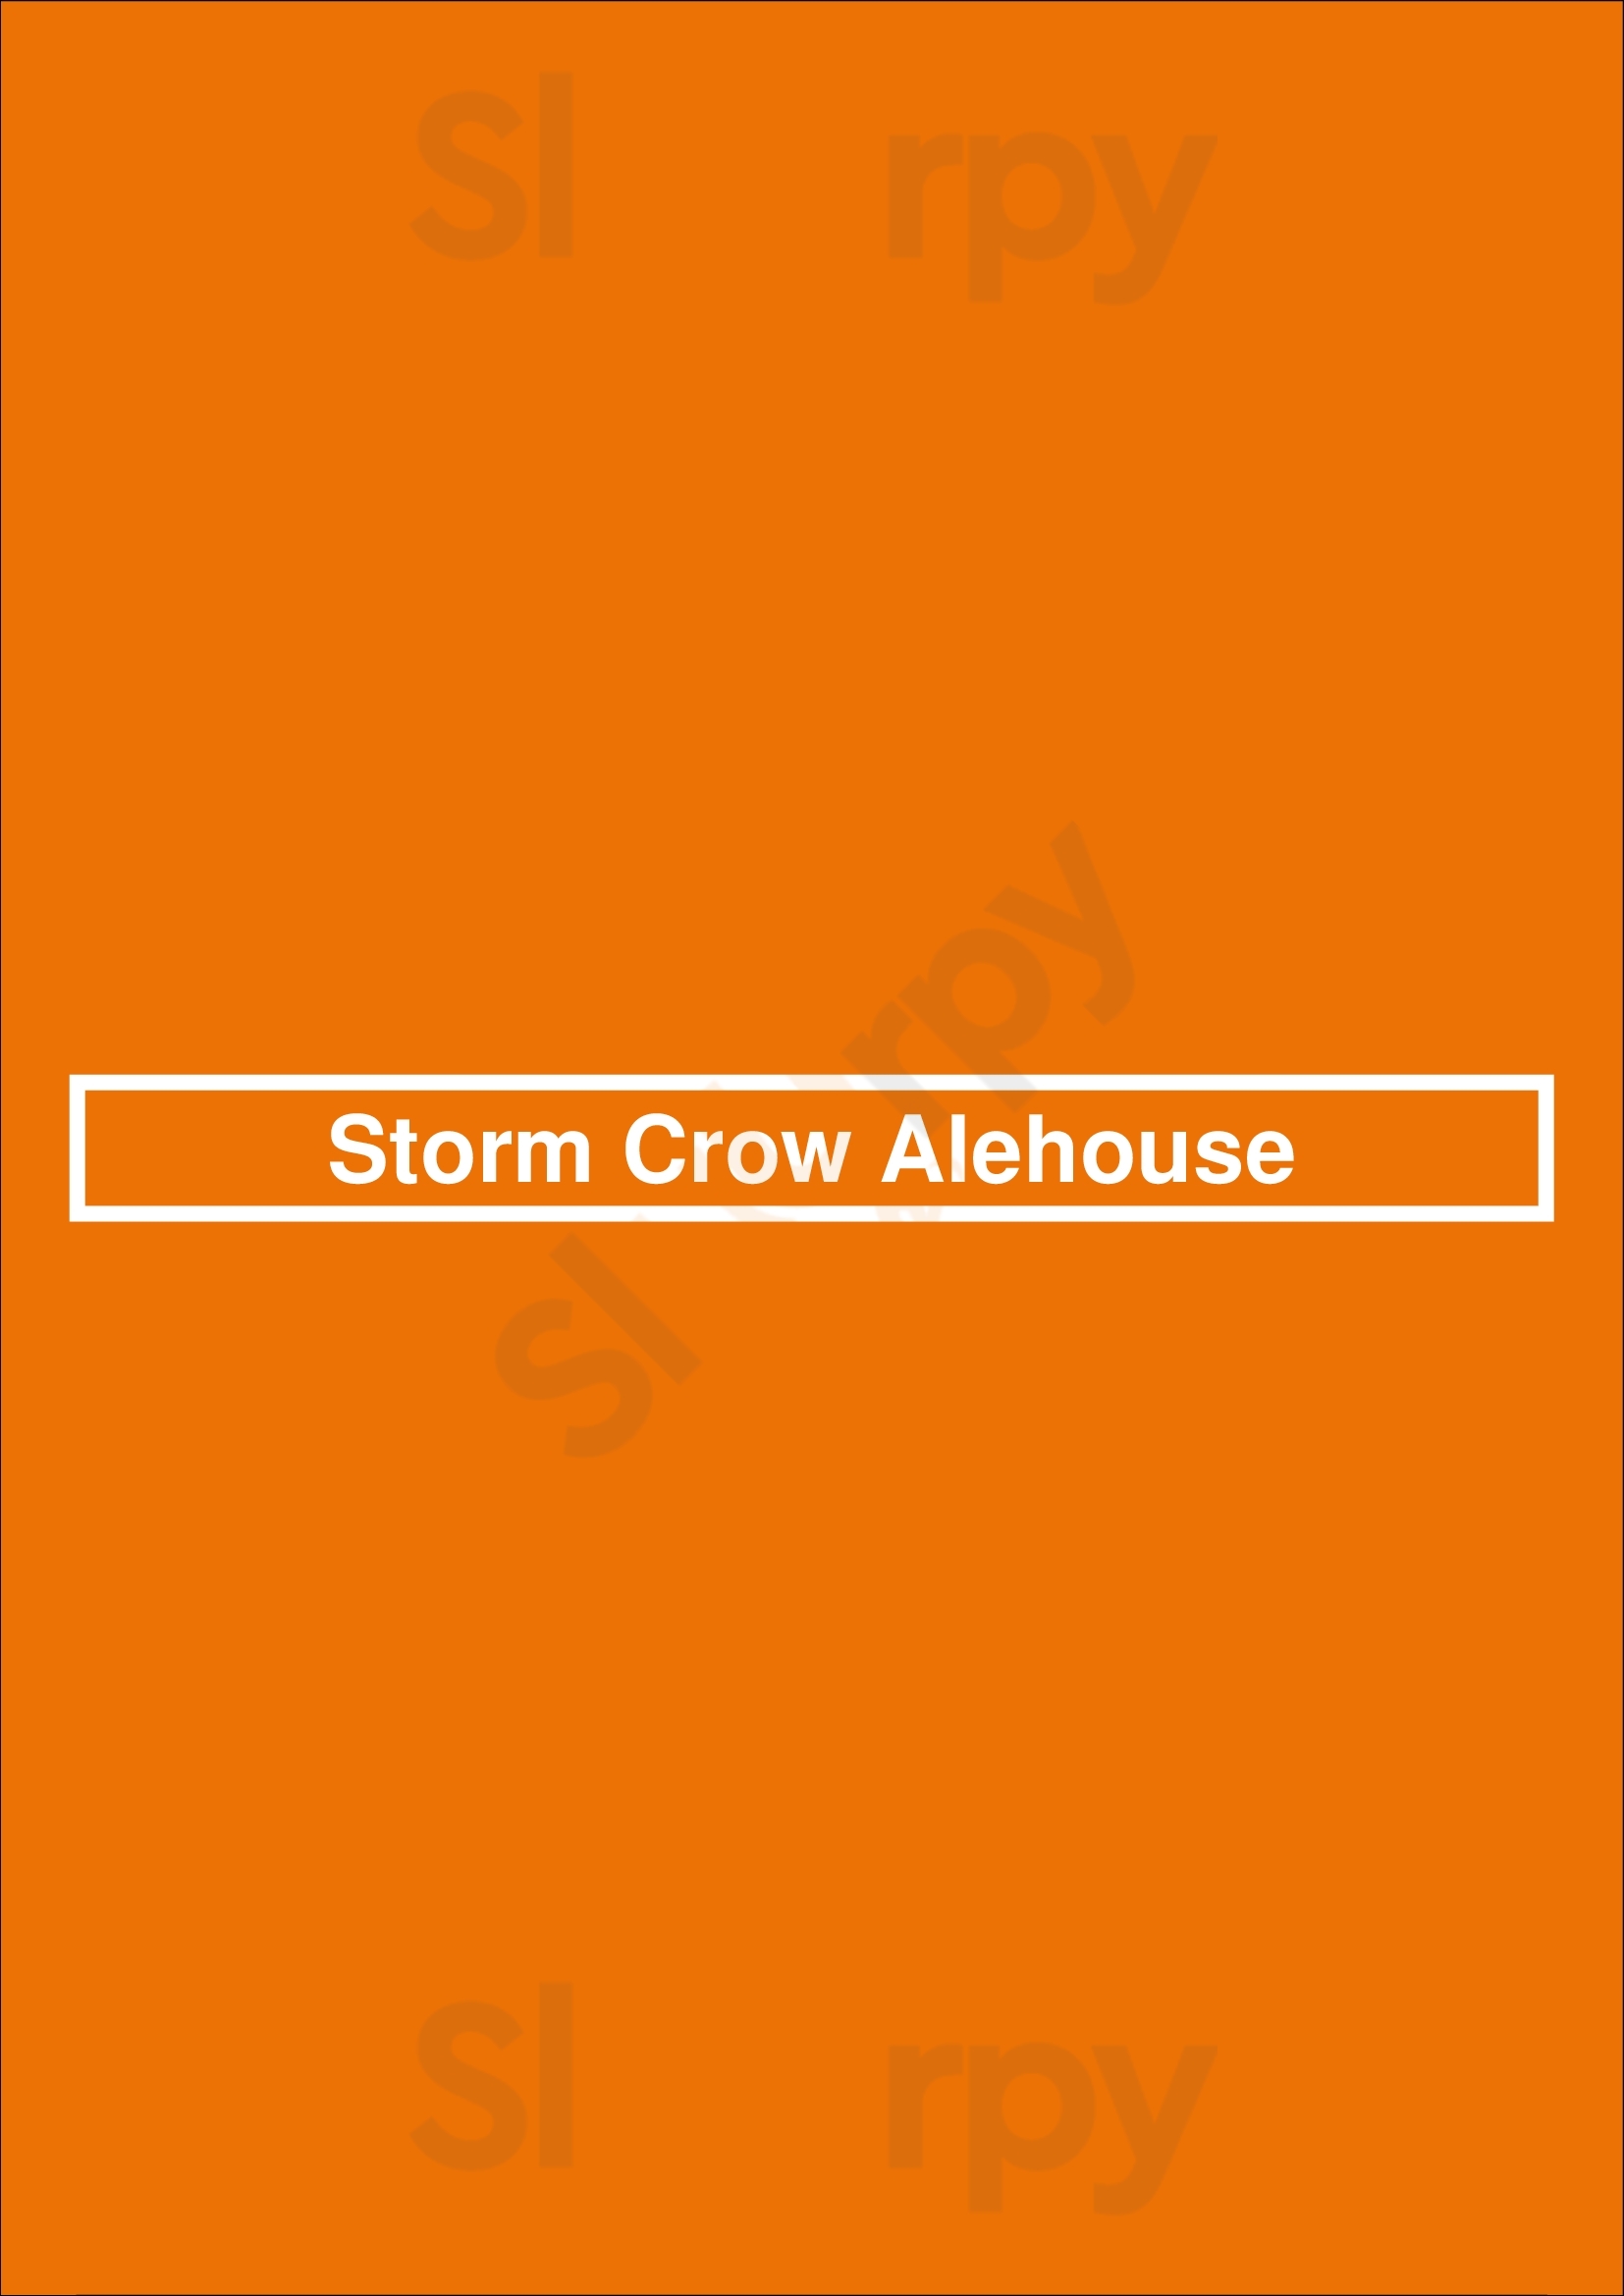 Storm Crow Alehouse Vancouver Menu - 1